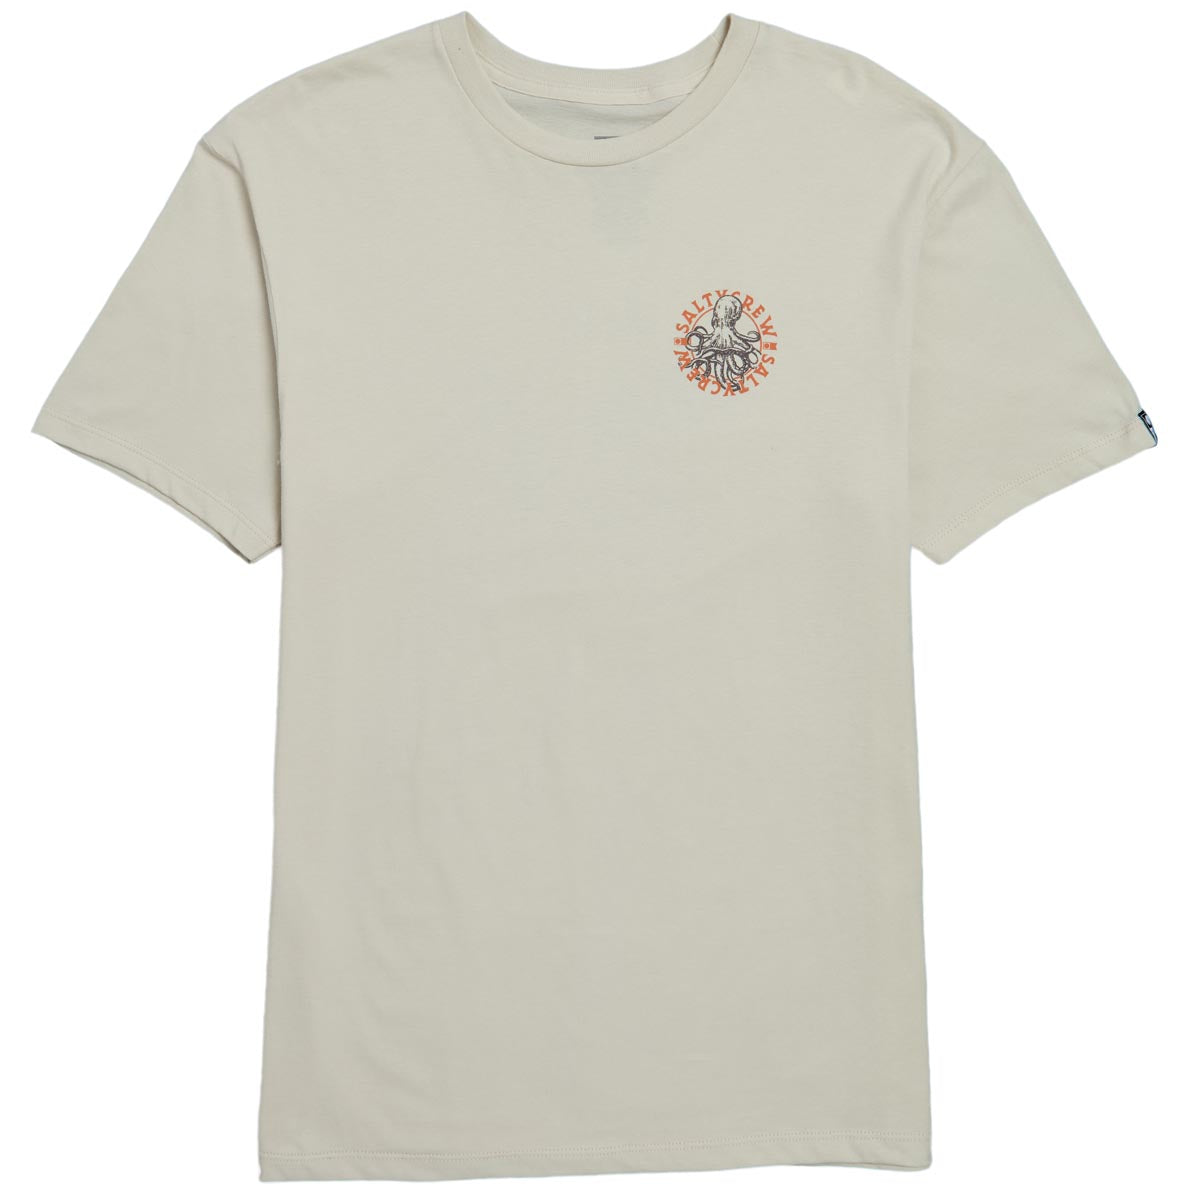 Salty Crew Tentacles Premium T-Shirt - Bone image 4